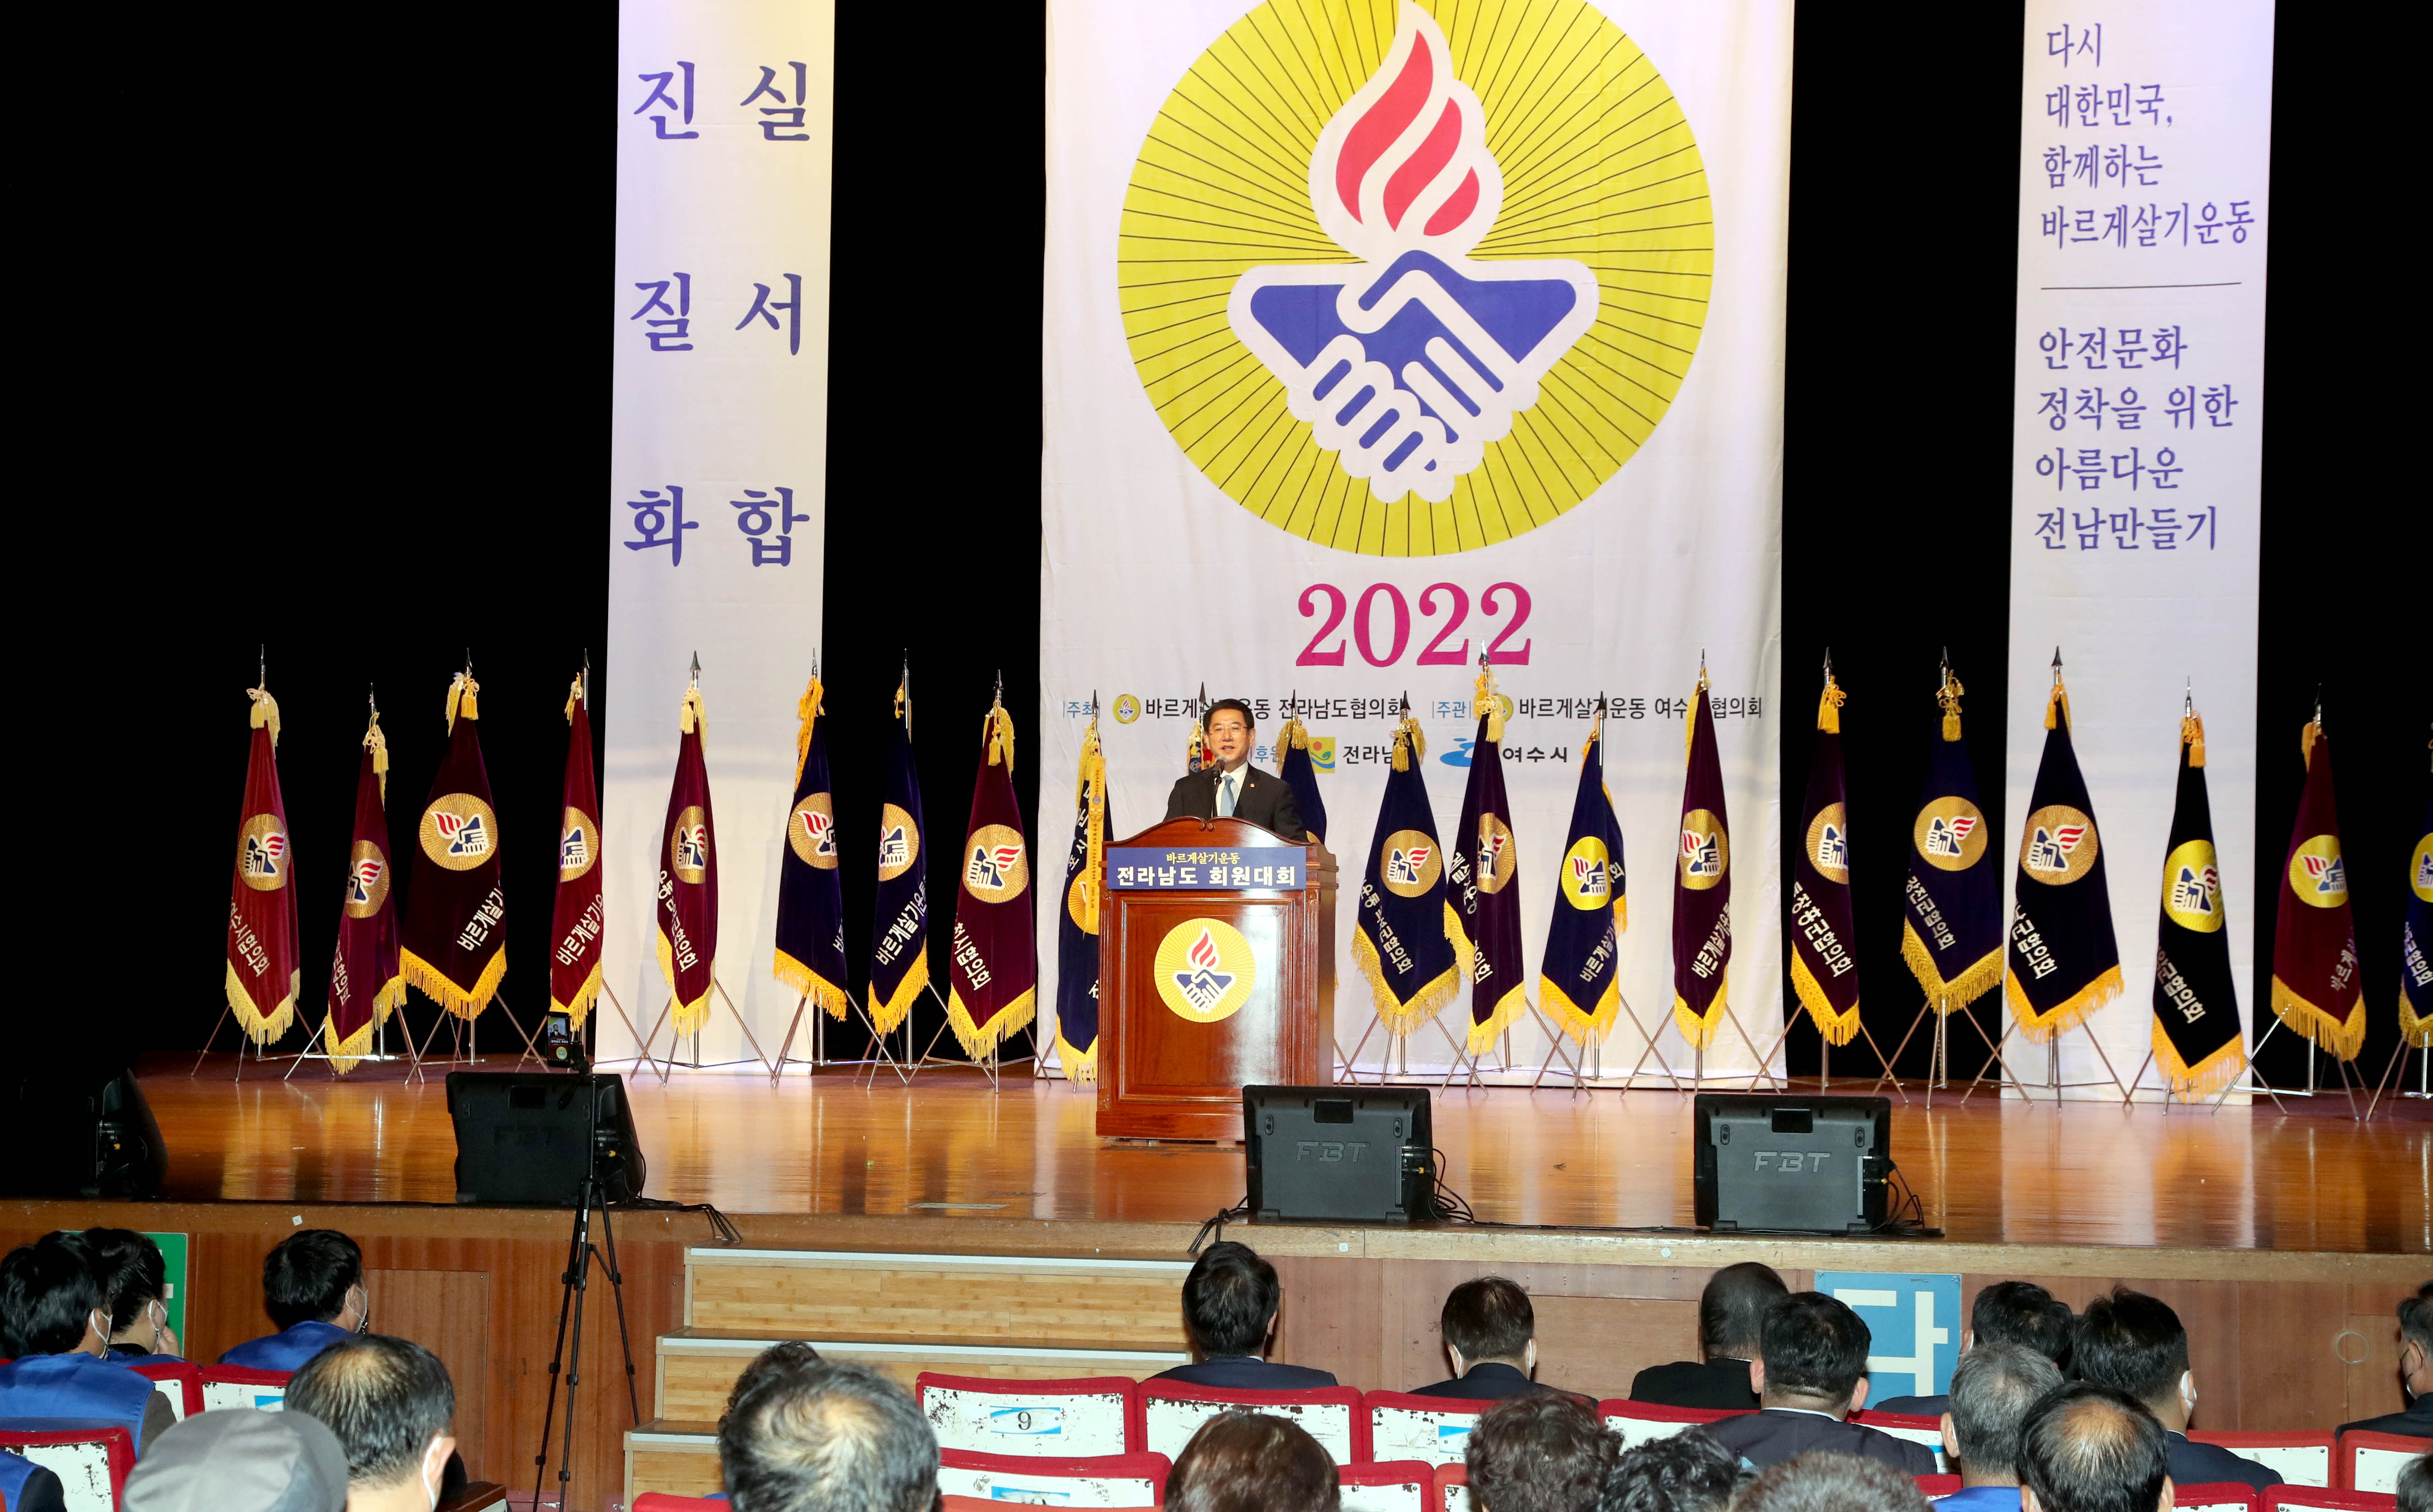 20221128 2022 안전문화 정착을 위한 아름다운 전남만들기 회원 전진대회2